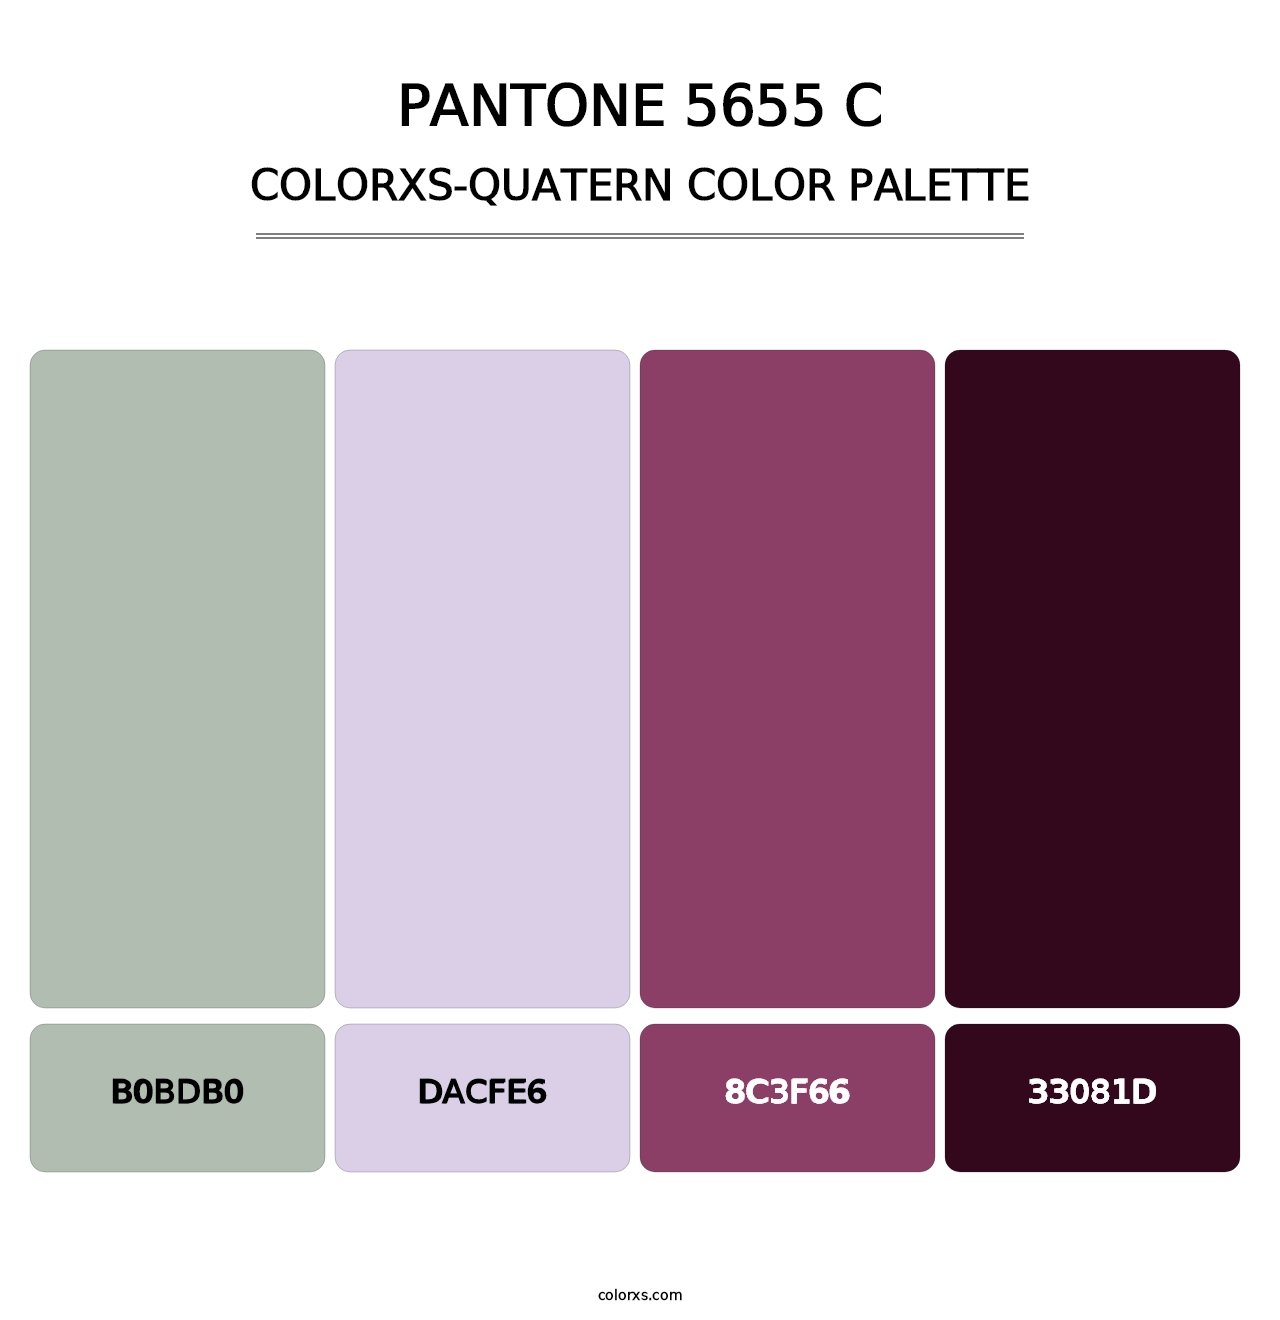 PANTONE 5655 C - Colorxs Quatern Palette